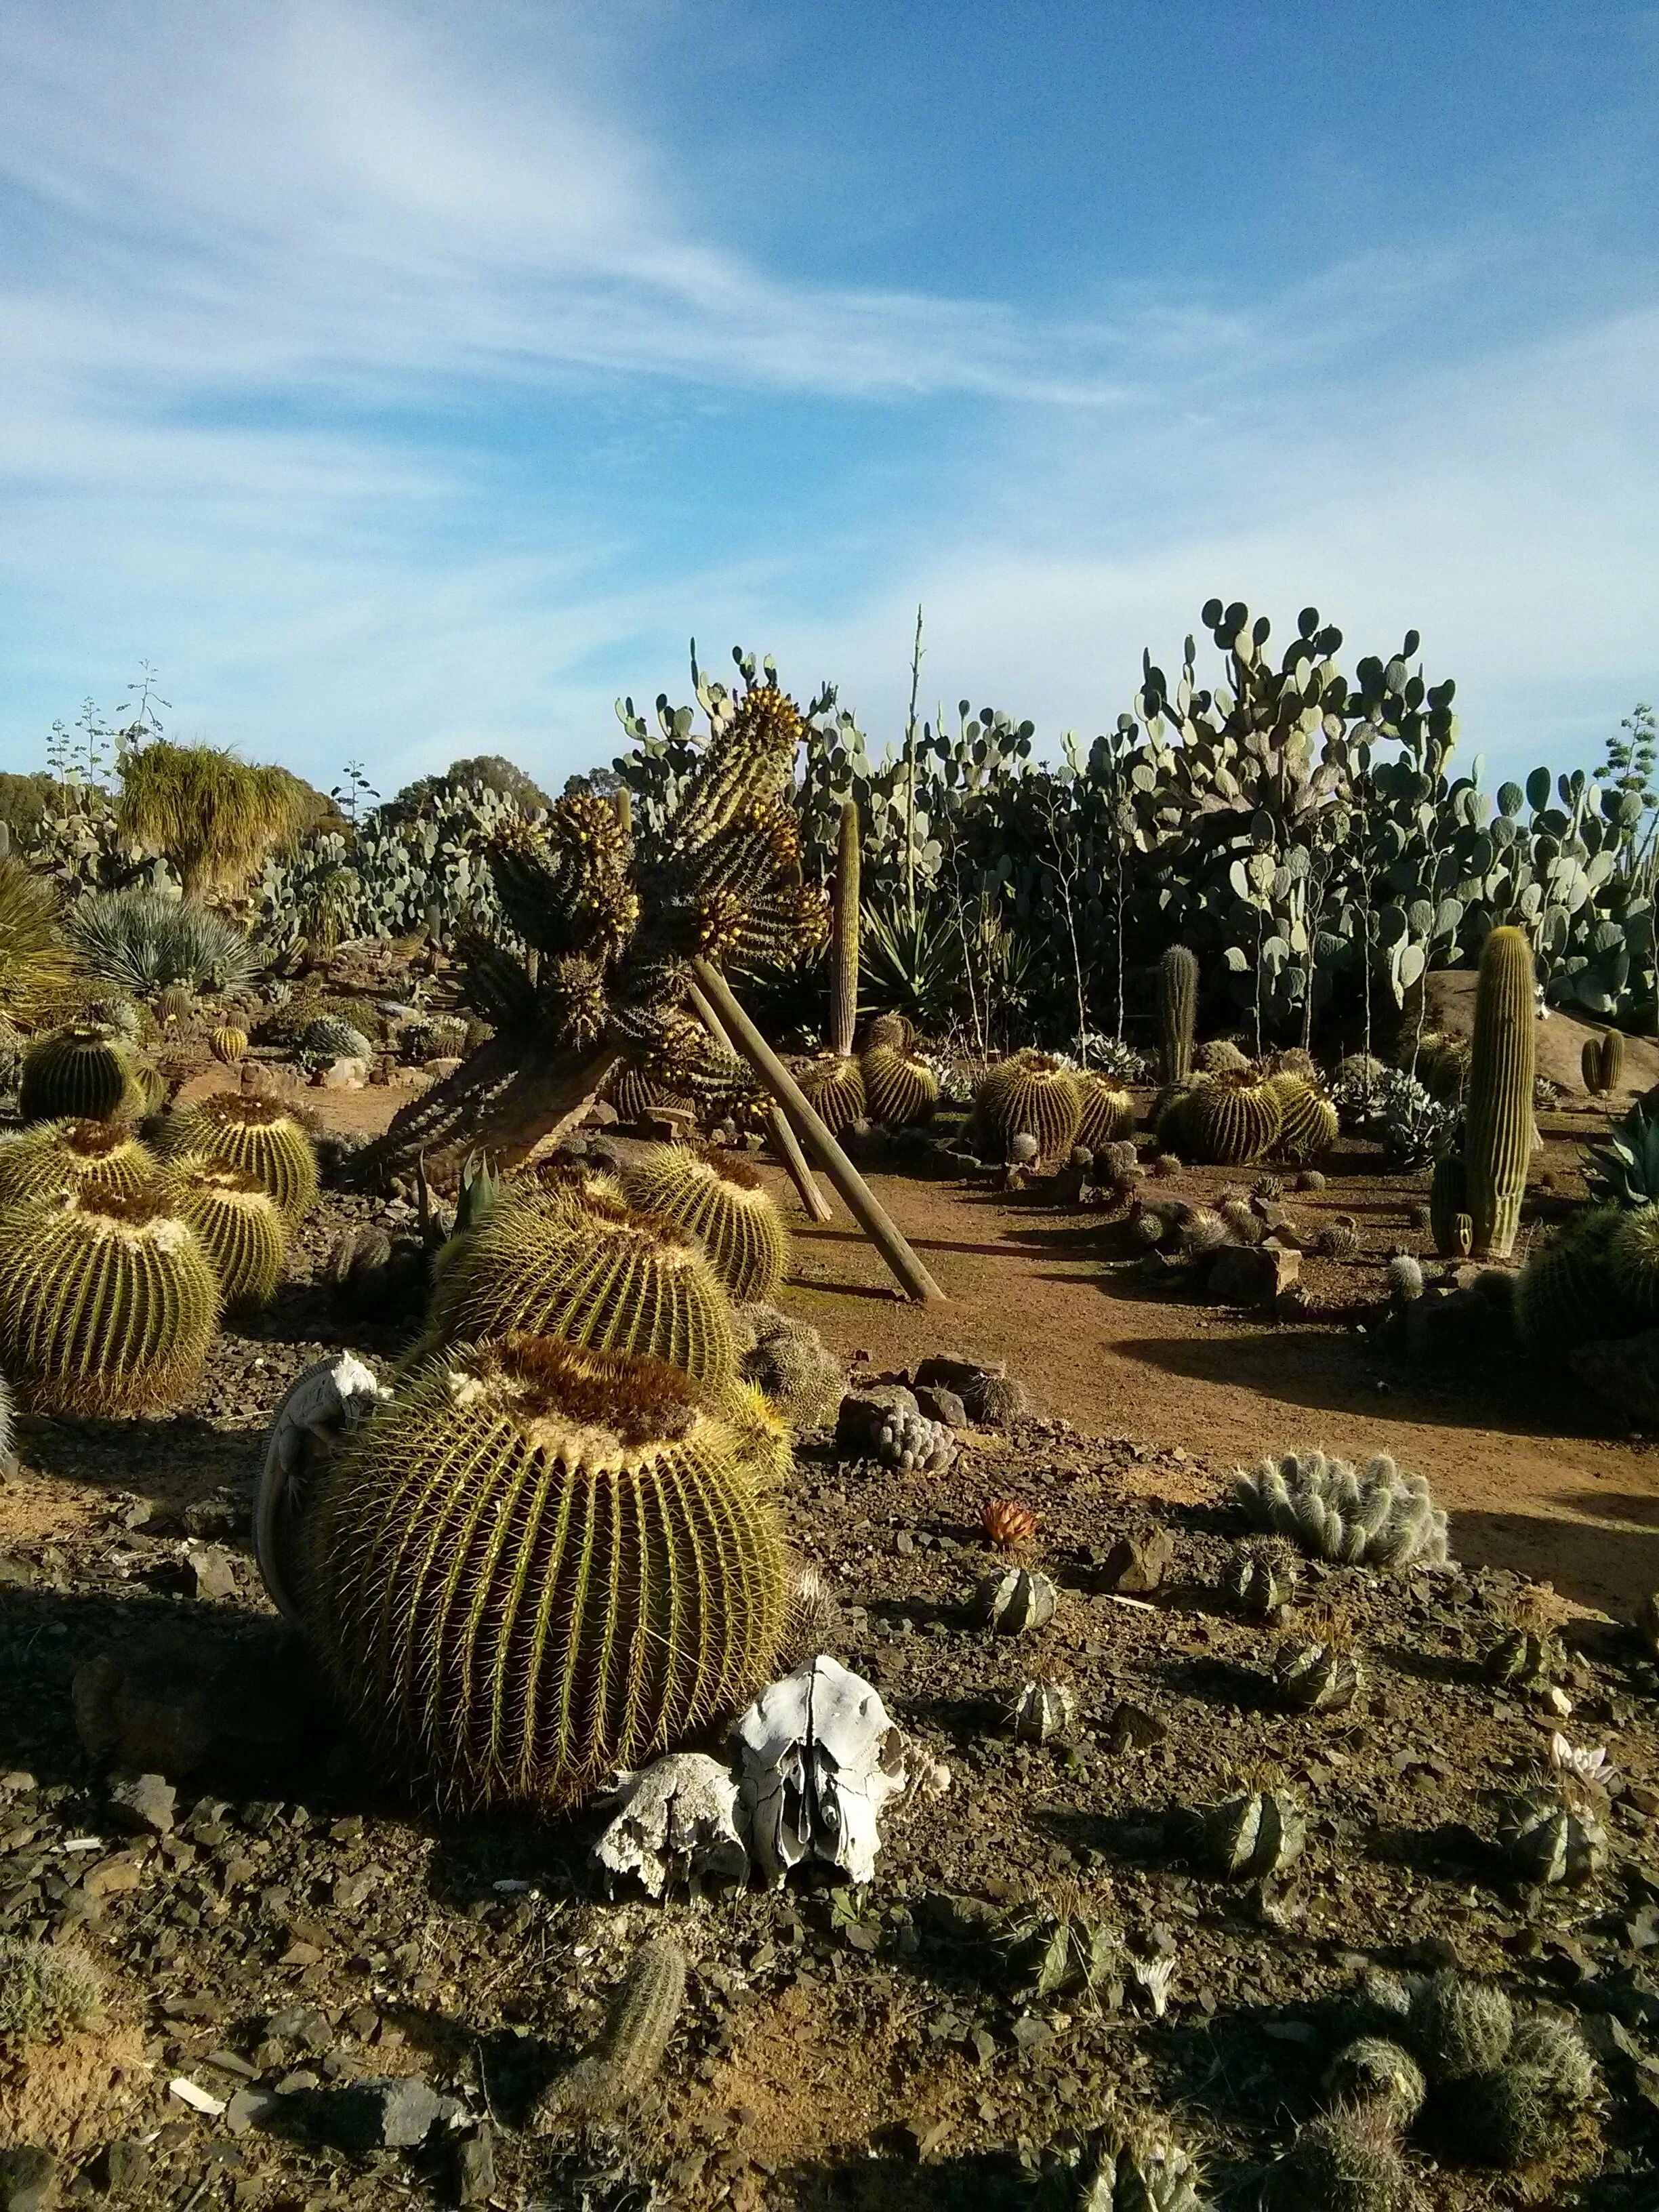 Gardens full of cacti